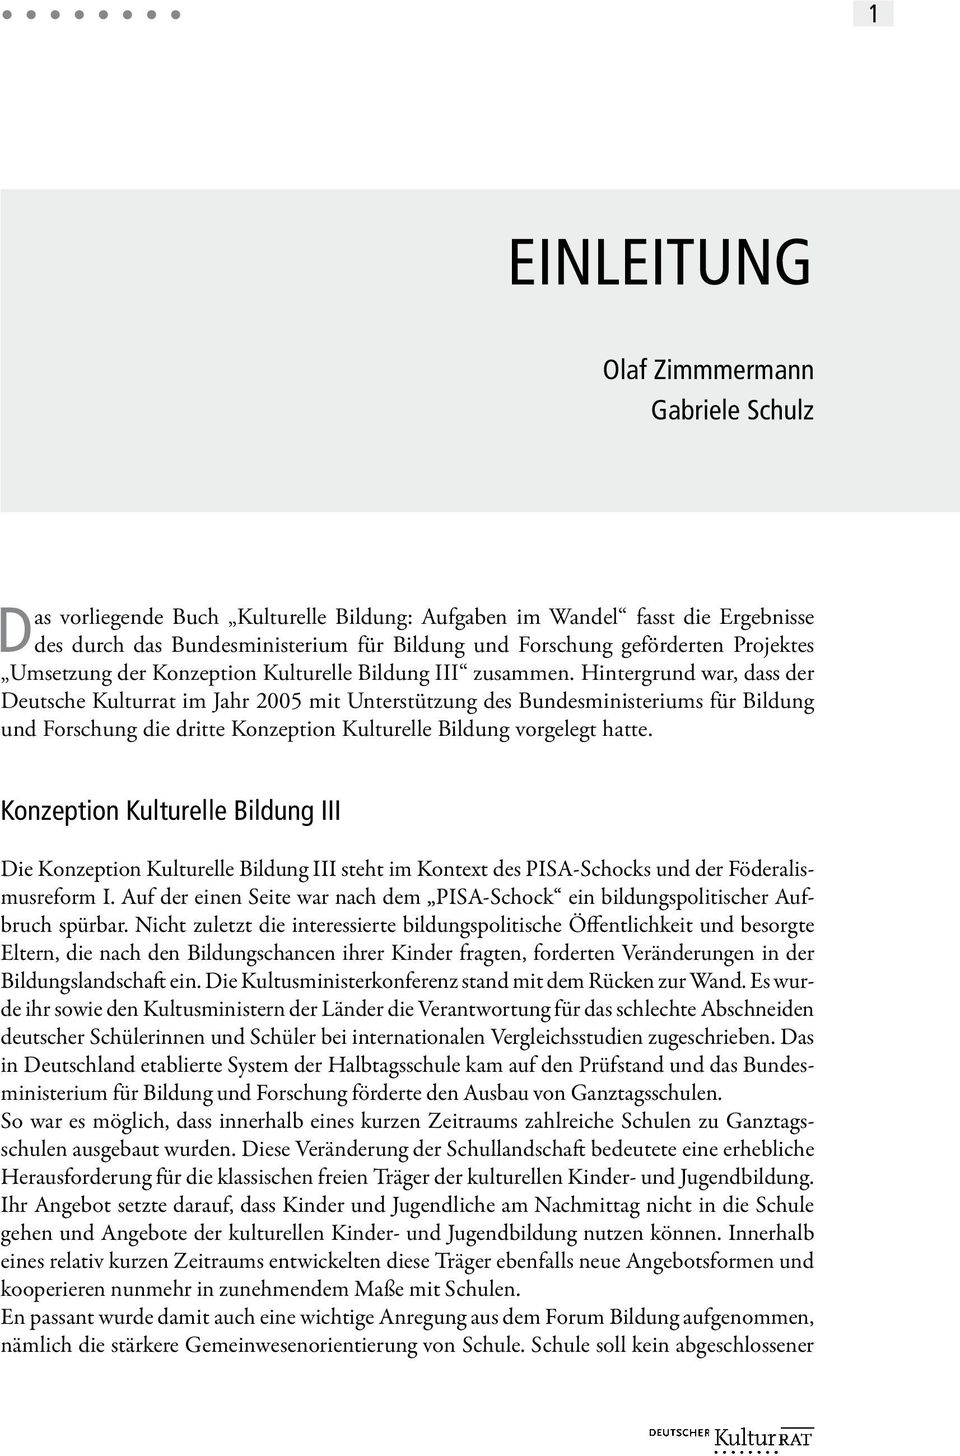 Hintergrund war, dass der Deutsche Kulturrat im Jahr 2005 mit Unterstützung des Bundesministeriums für Bildung und Forschung die dritte Konzeption Kulturelle Bildung vorgelegt hatte.